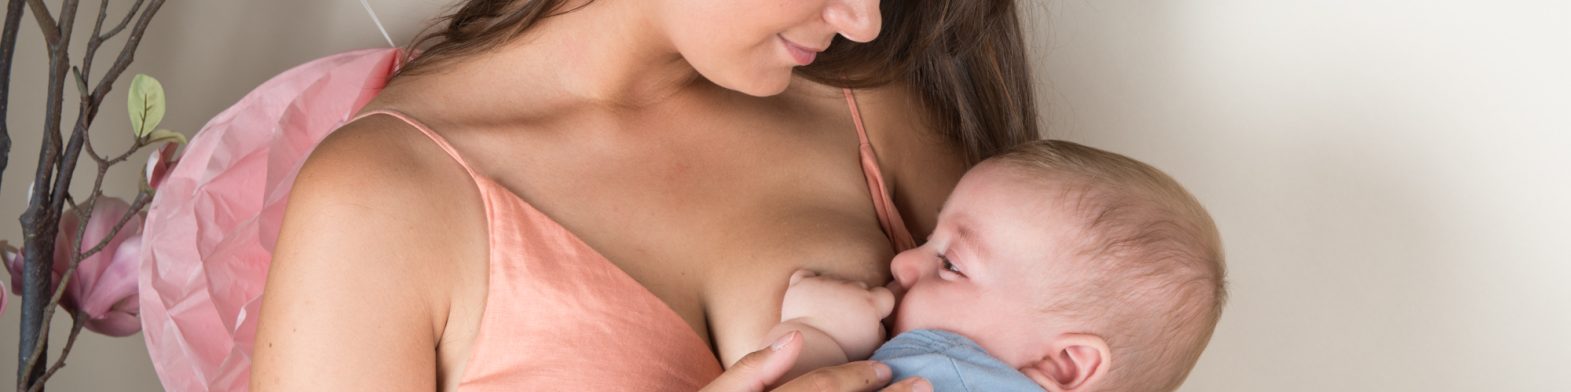 Calmosine allaitement : une enquête auprès de 60 mères allaitantes souligne son intérêt cover